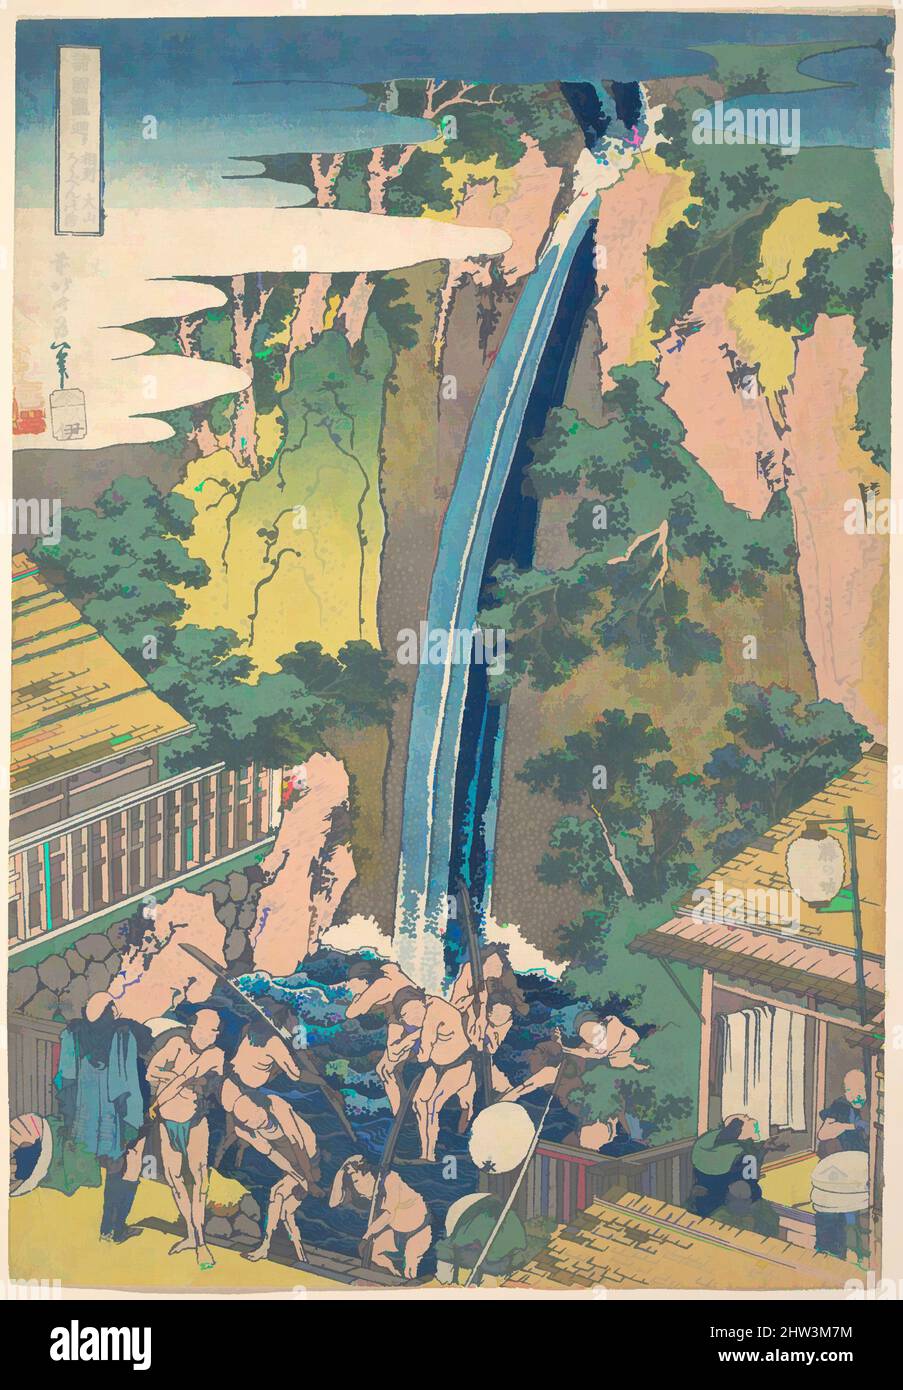 Kunst inspiriert von 諸國瀧廻リ 相州大山ろうべんの瀧, Wasserfall von Rōben in der Provinz Sagami (Ōyama Sōshū Ōyama Rōben no taki), aus der Serie A Tour of Waterfalls in Various Provinces (Shokoku taki meguri), Edo-Zeit (1615–1868), 1760–1849, Japan, Polychromer Holzschnitt; Tusche und Farbe auf Papier, 14 1, Classic Works modernisiert von Artotop mit einem Schuss Moderne. Formen, Farbe und Wert, auffällige visuelle Wirkung auf Kunst. Emotionen durch Freiheit von Kunstwerken auf zeitgemäße Weise. Eine zeitlose Botschaft, die eine wild kreative neue Richtung verfolgt. Künstler, die sich dem digitalen Medium zuwenden und die Artotop NFT erschaffen Stockfoto